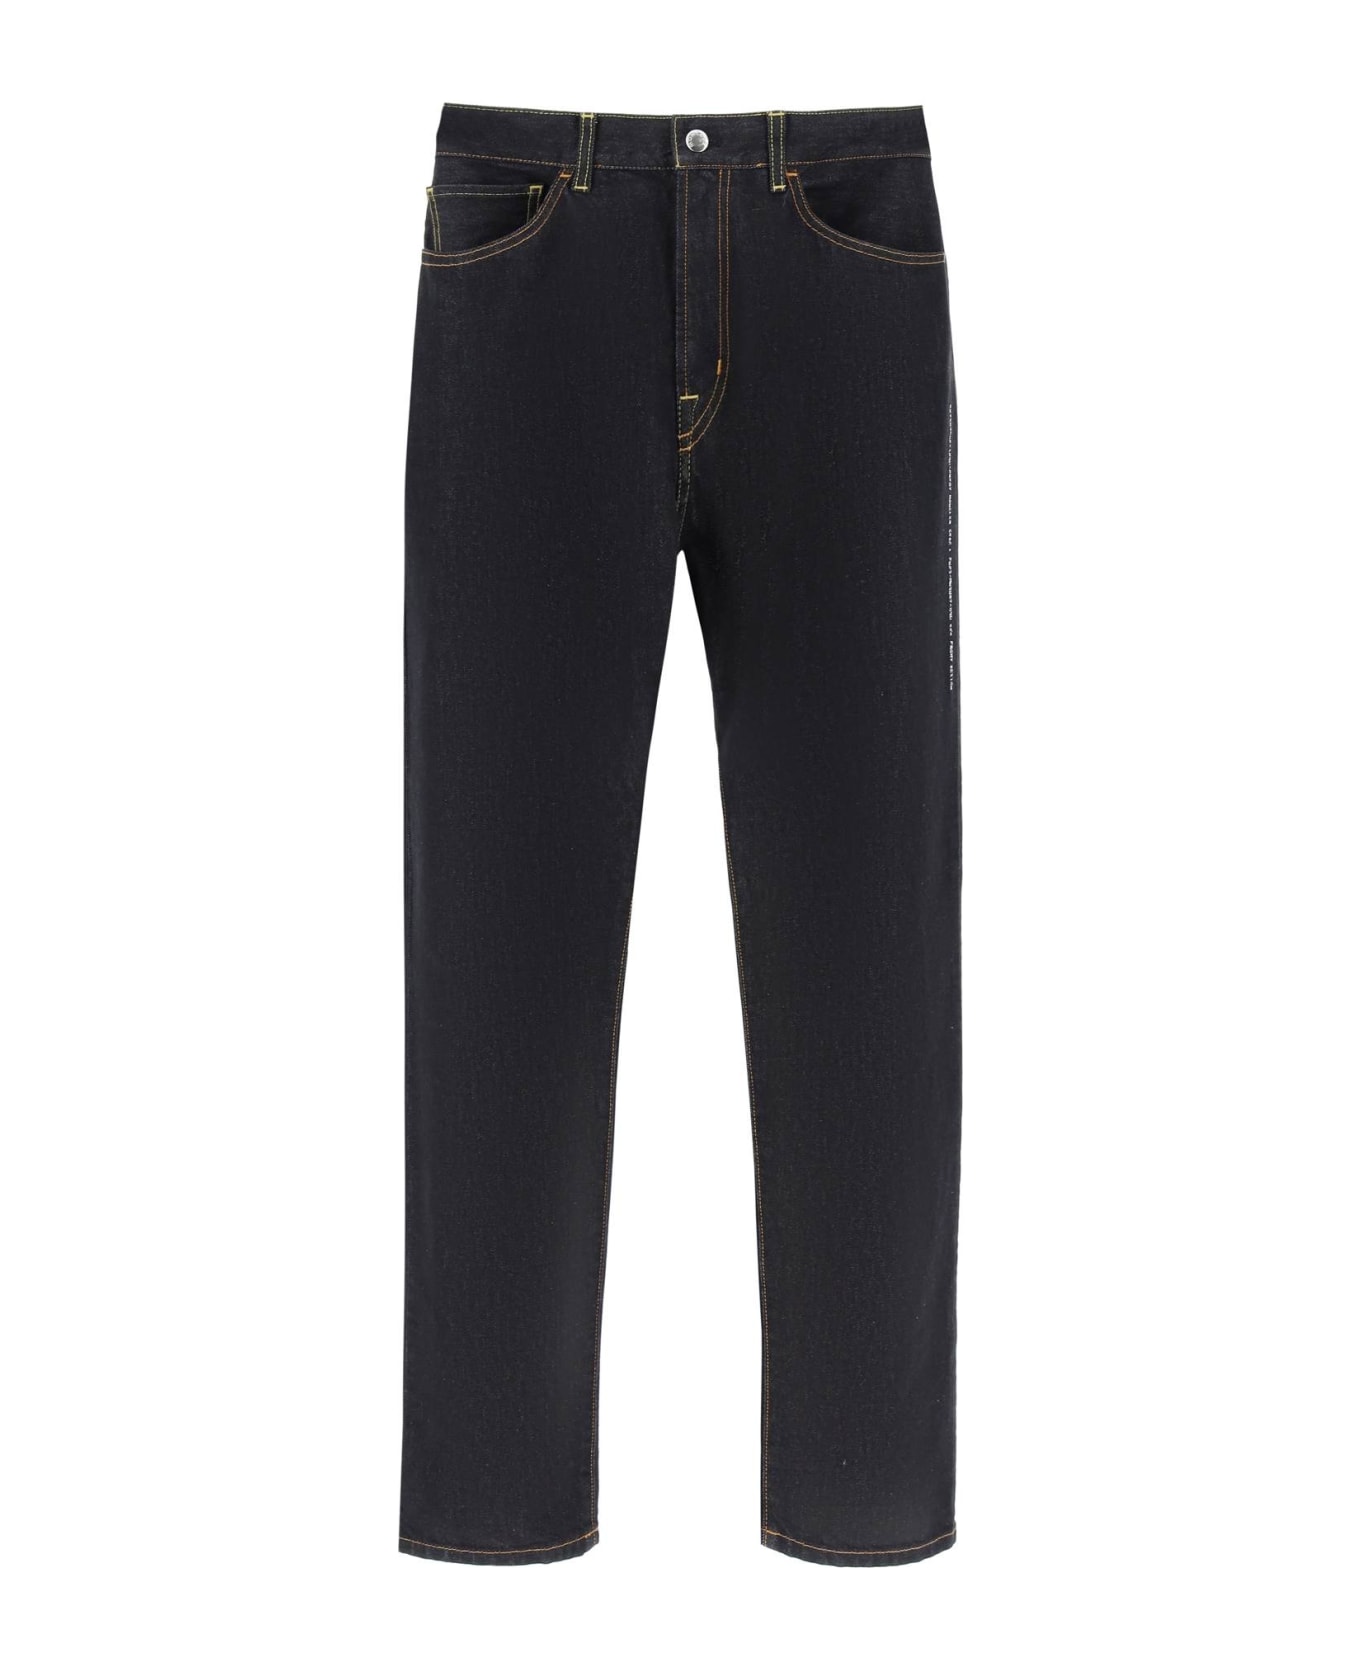 Moncler Genius Loose Fit Jeans - BLUE DEMIN (Black)